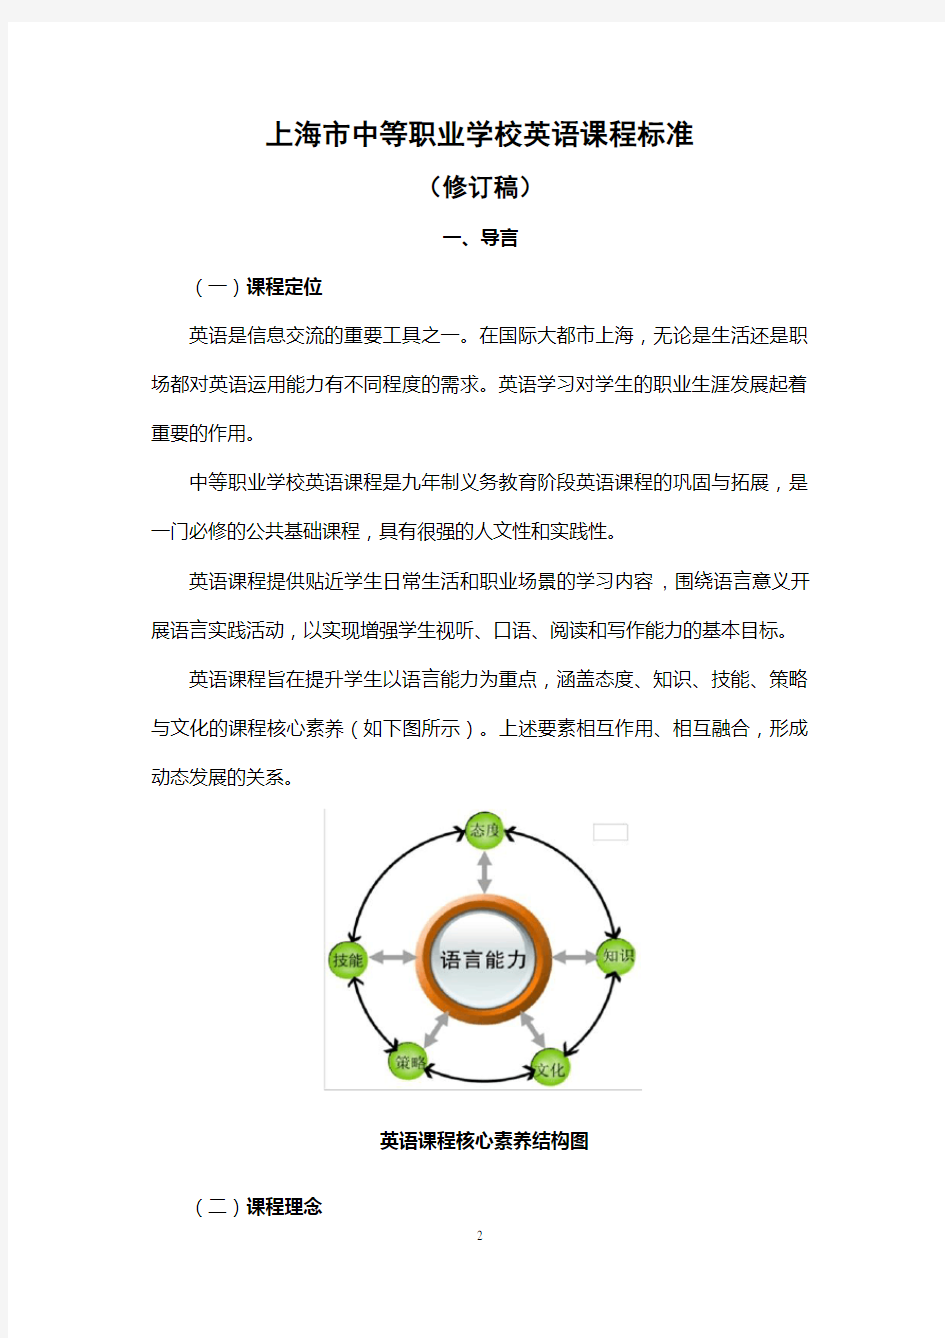 上海市中等职业学校英语课程标准(修订稿)